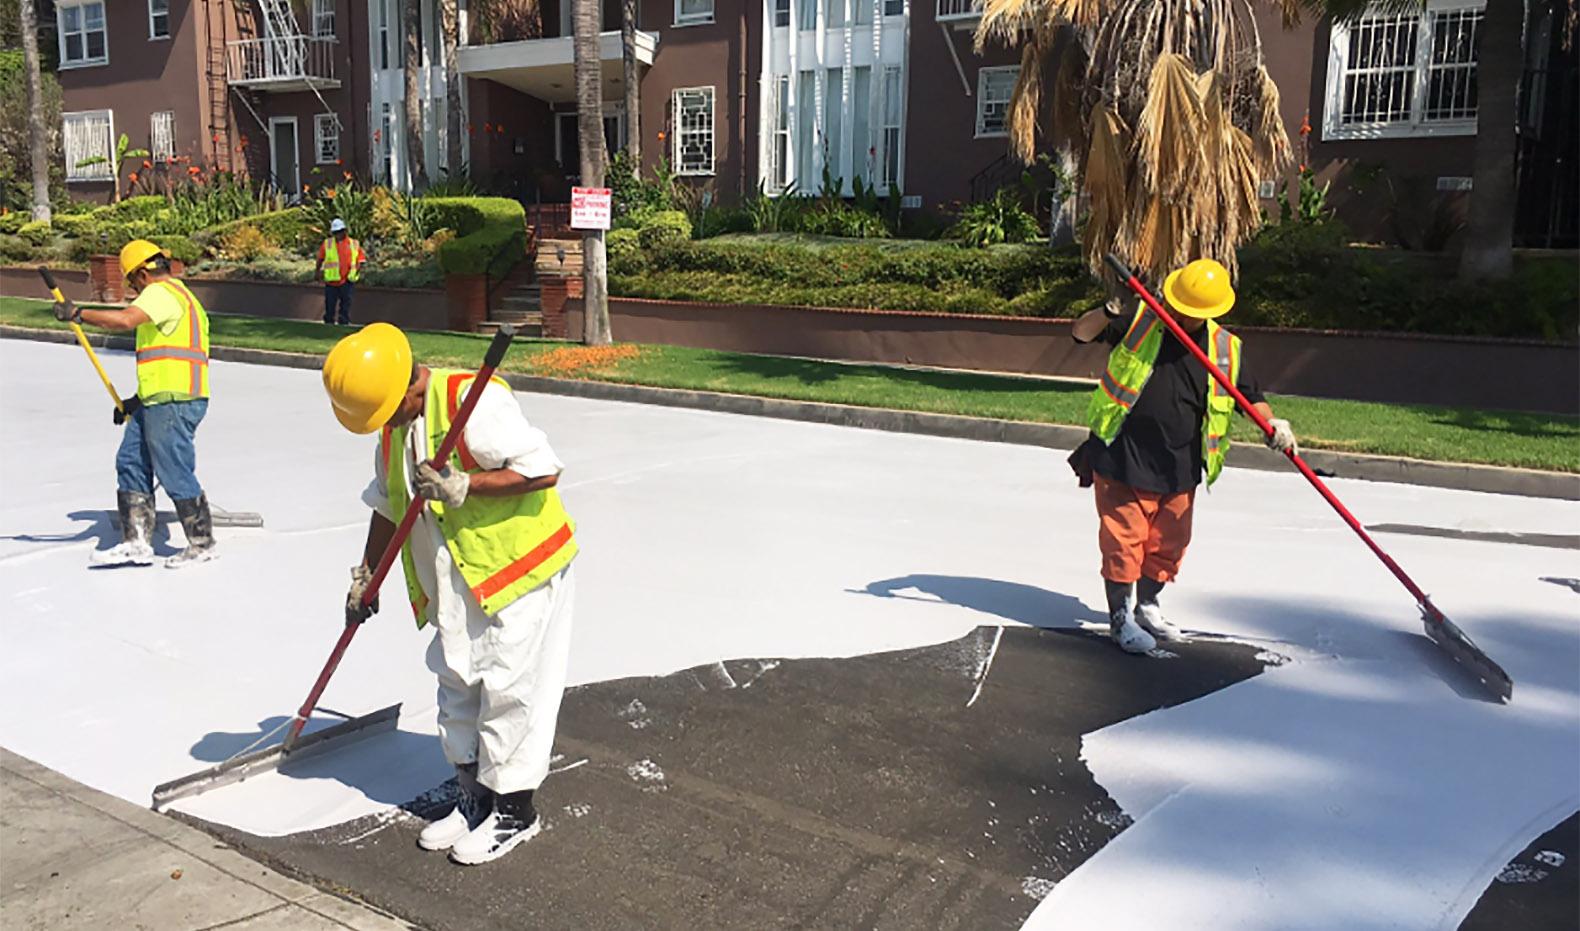 Λος Άντζελες: Βάφουν τους δρόμους με λευκό χρώμα για να καταπολεμήσουν τις υψηλές θερμοκρασίες στην πόλη